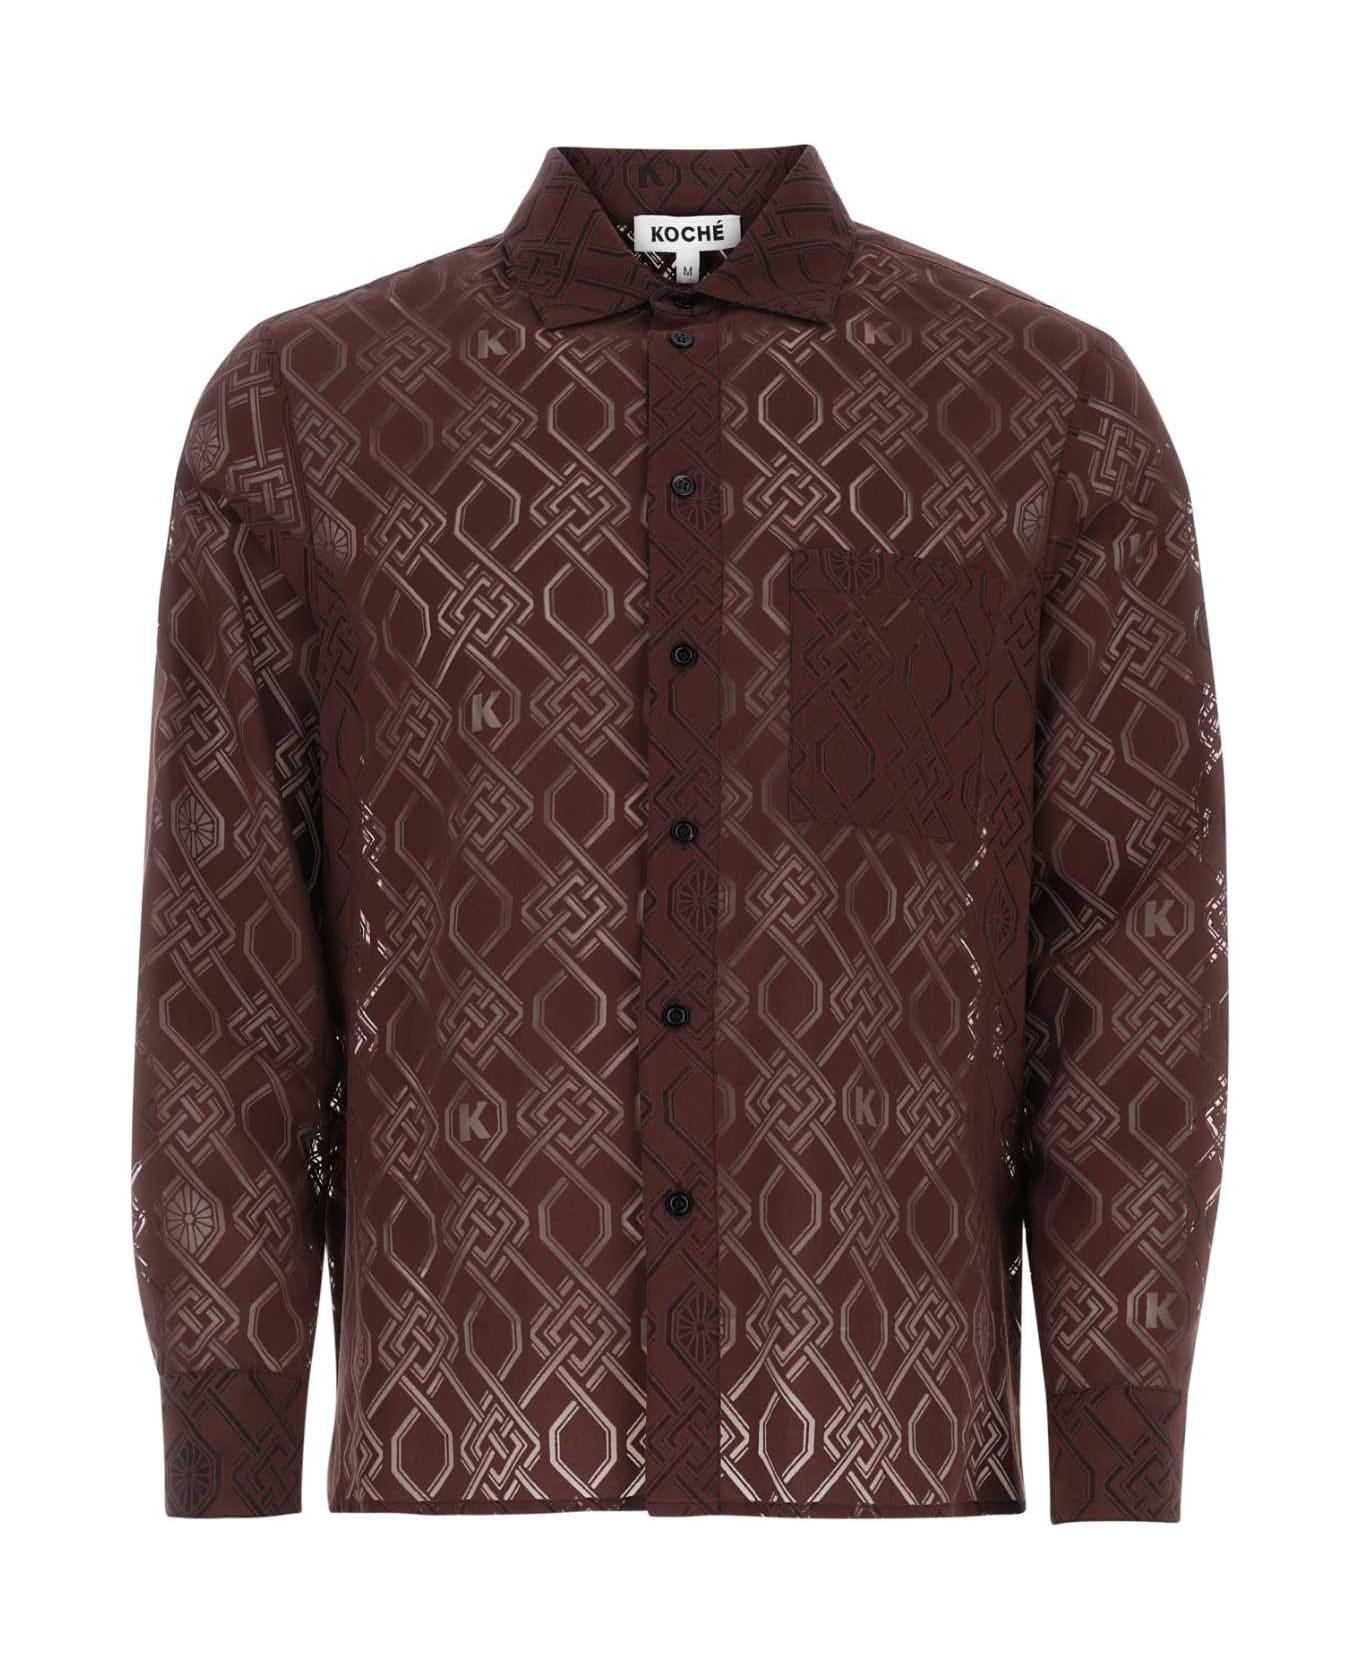 Koché Embroidered Viscose Blend Shirt - Brown